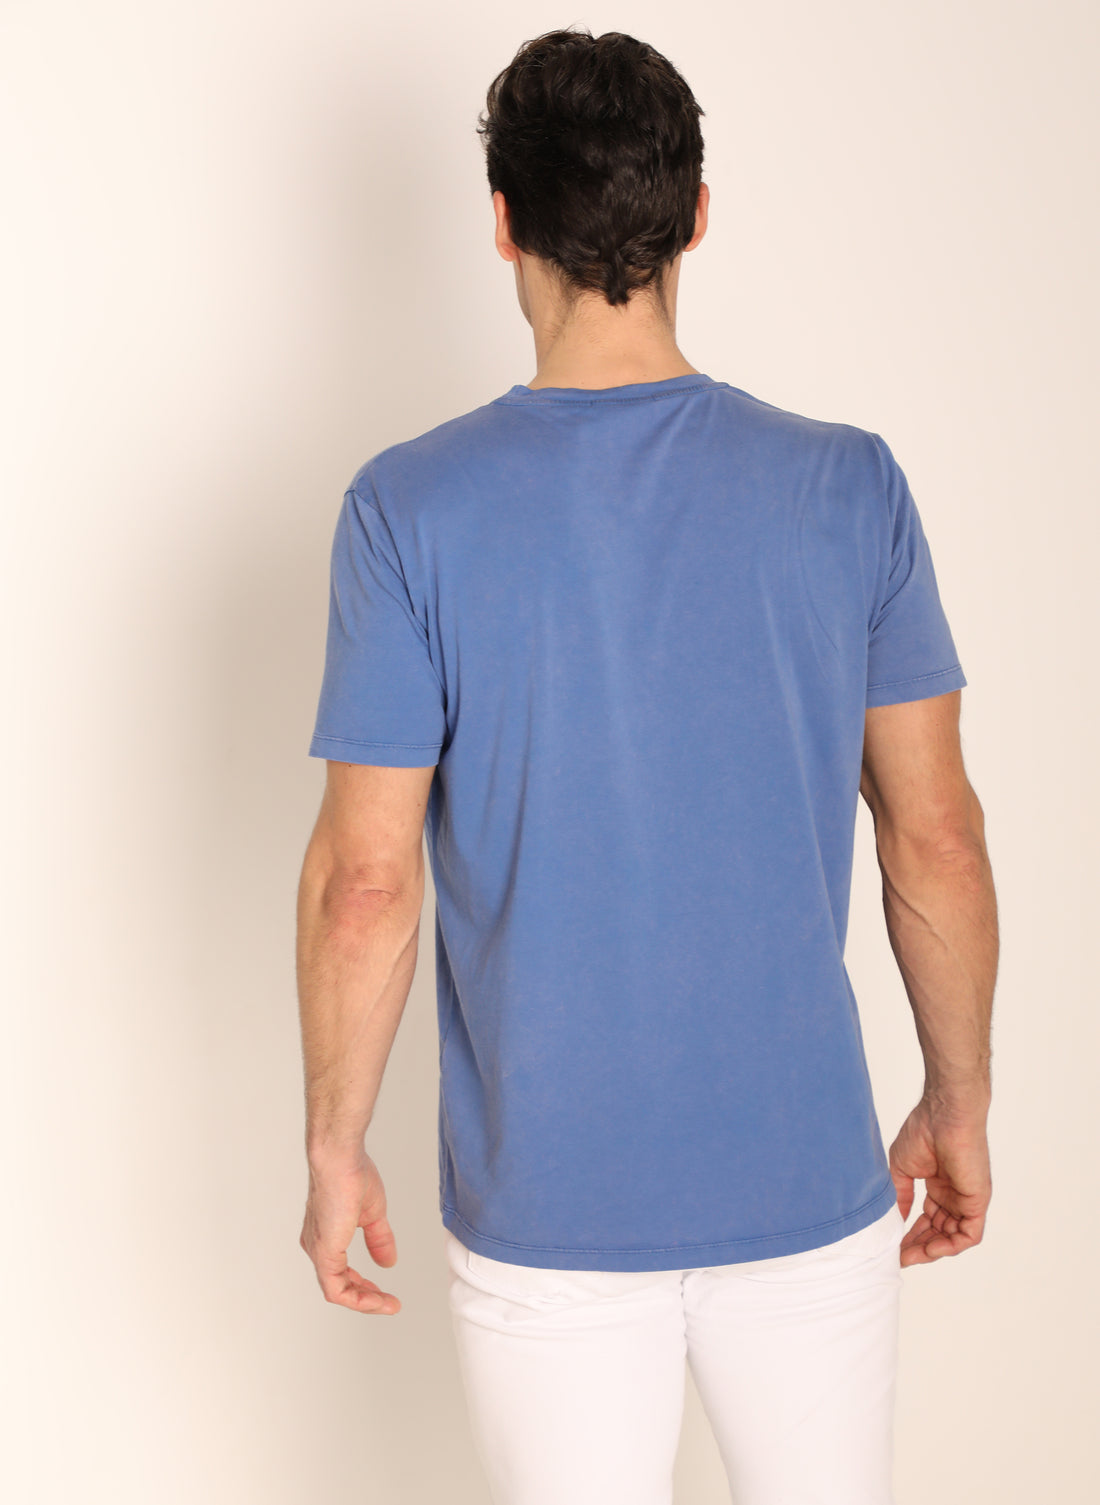 Lichtblauw kleurstof T-shirt in herenkleding